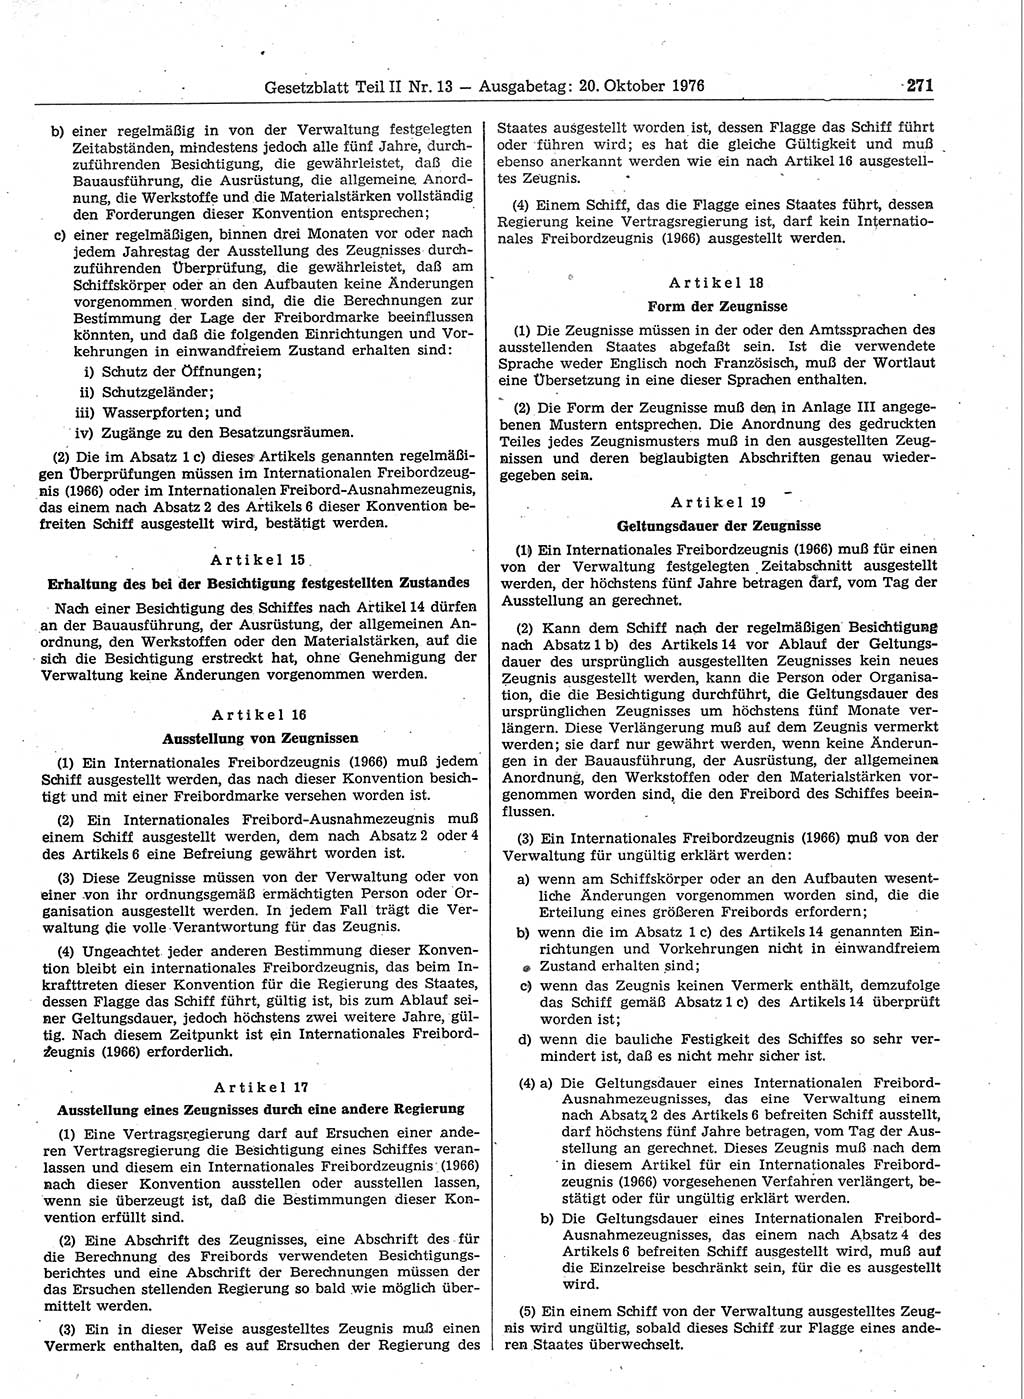 Gesetzblatt (GBl.) der Deutschen Demokratischen Republik (DDR) Teil ⅠⅠ 1976, Seite 271 (GBl. DDR ⅠⅠ 1976, S. 271)